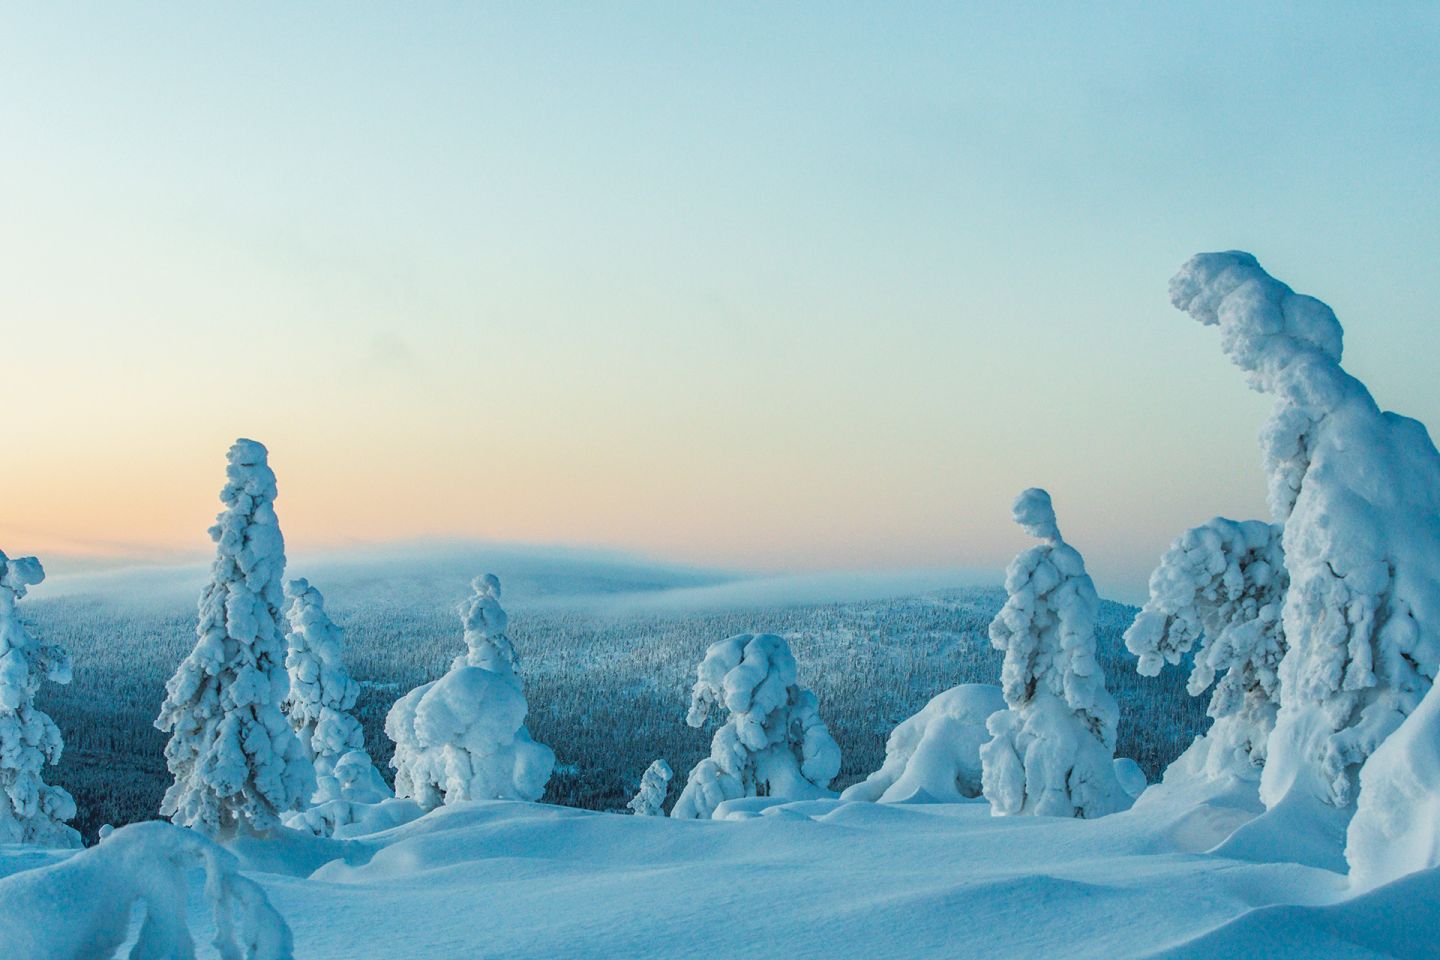 Snow in winter on Sallatunturi Fell in Lapland, Finland